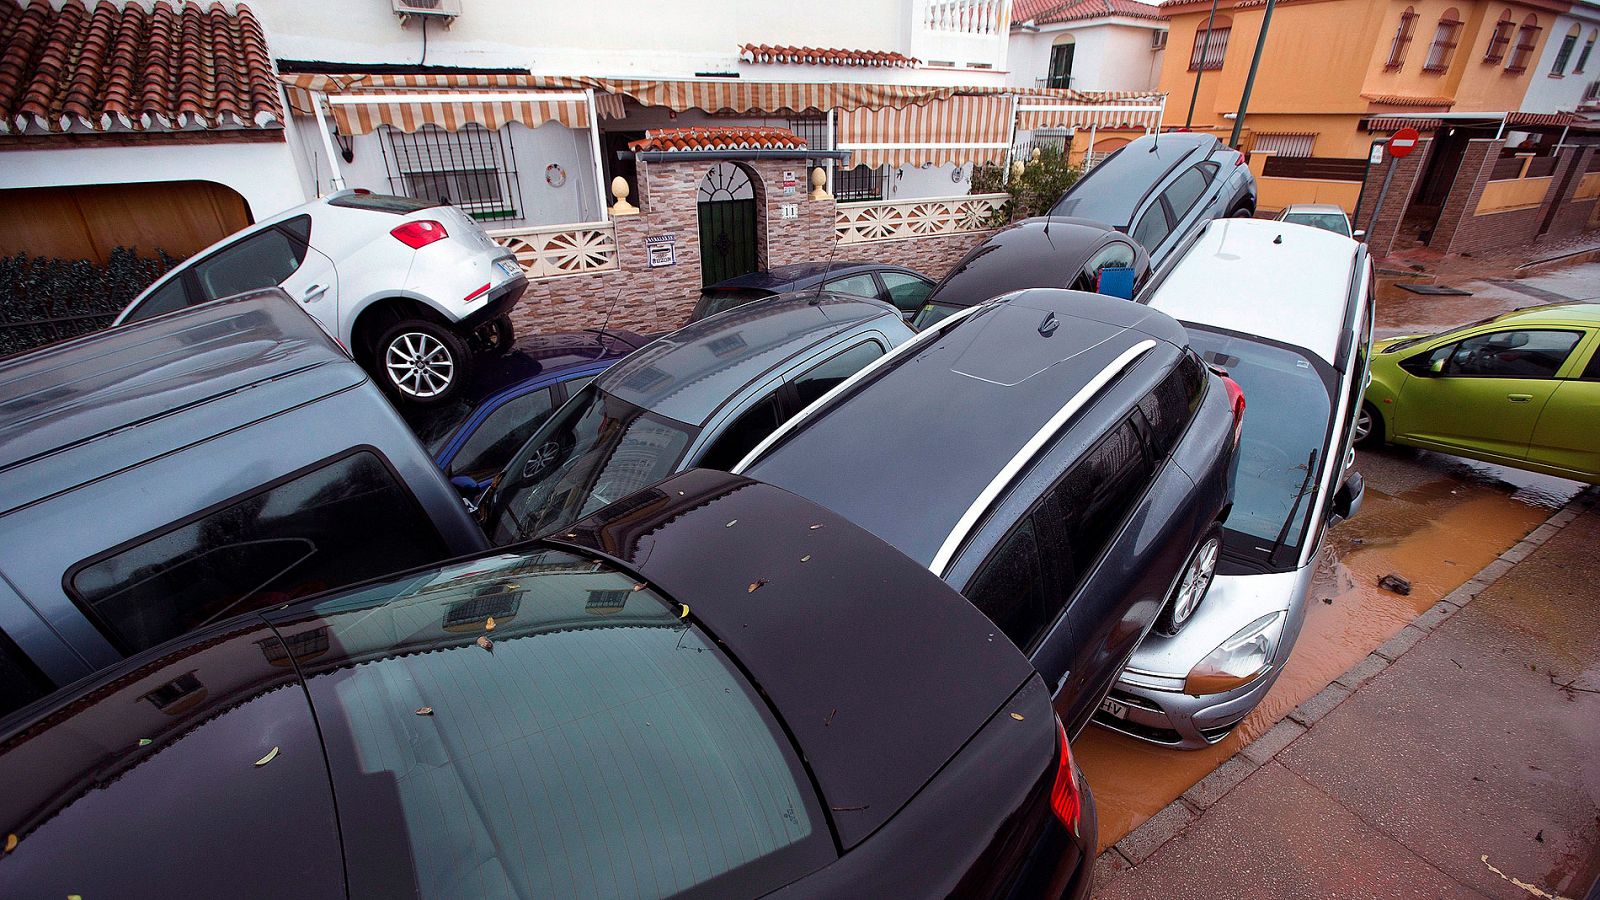 El temporal deja inundaciones en casas y garajes en Málaga